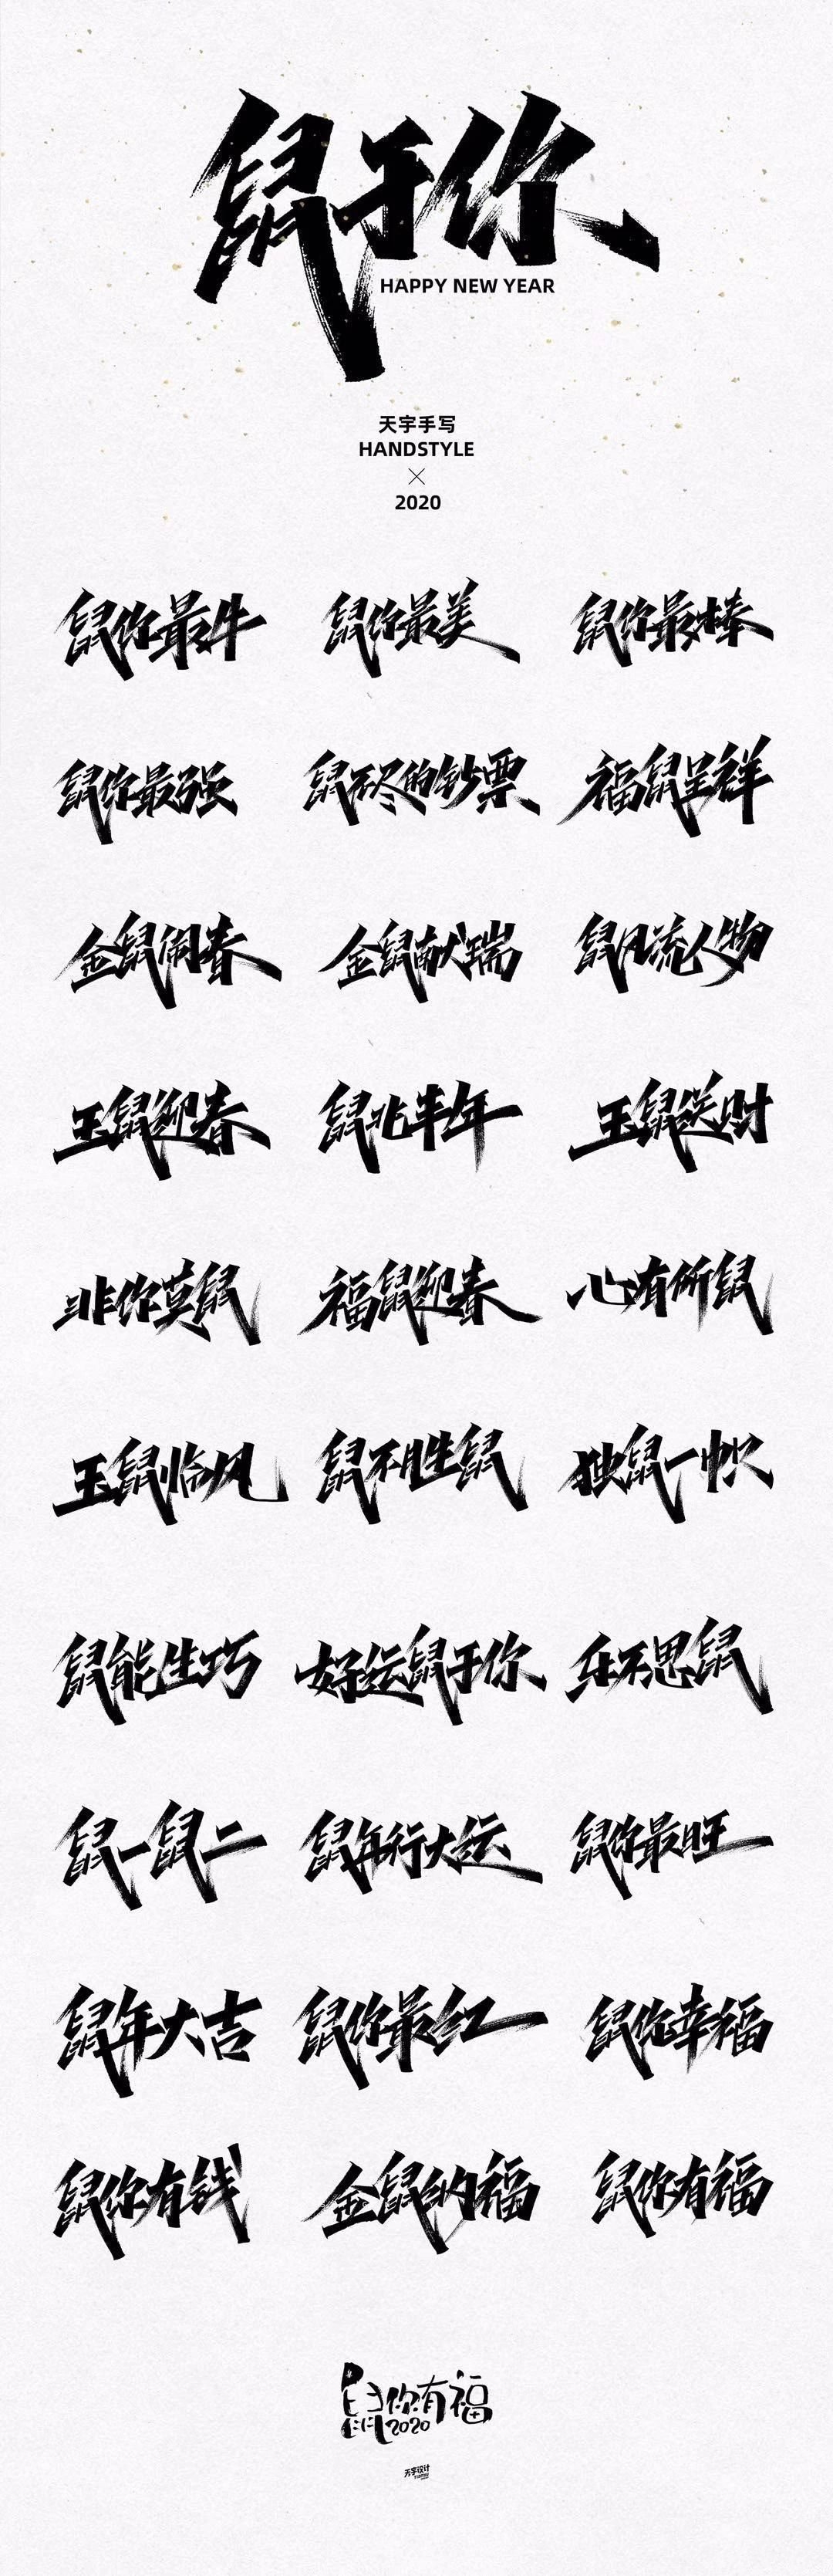 30组鼠年祝福语手写字 免费商用